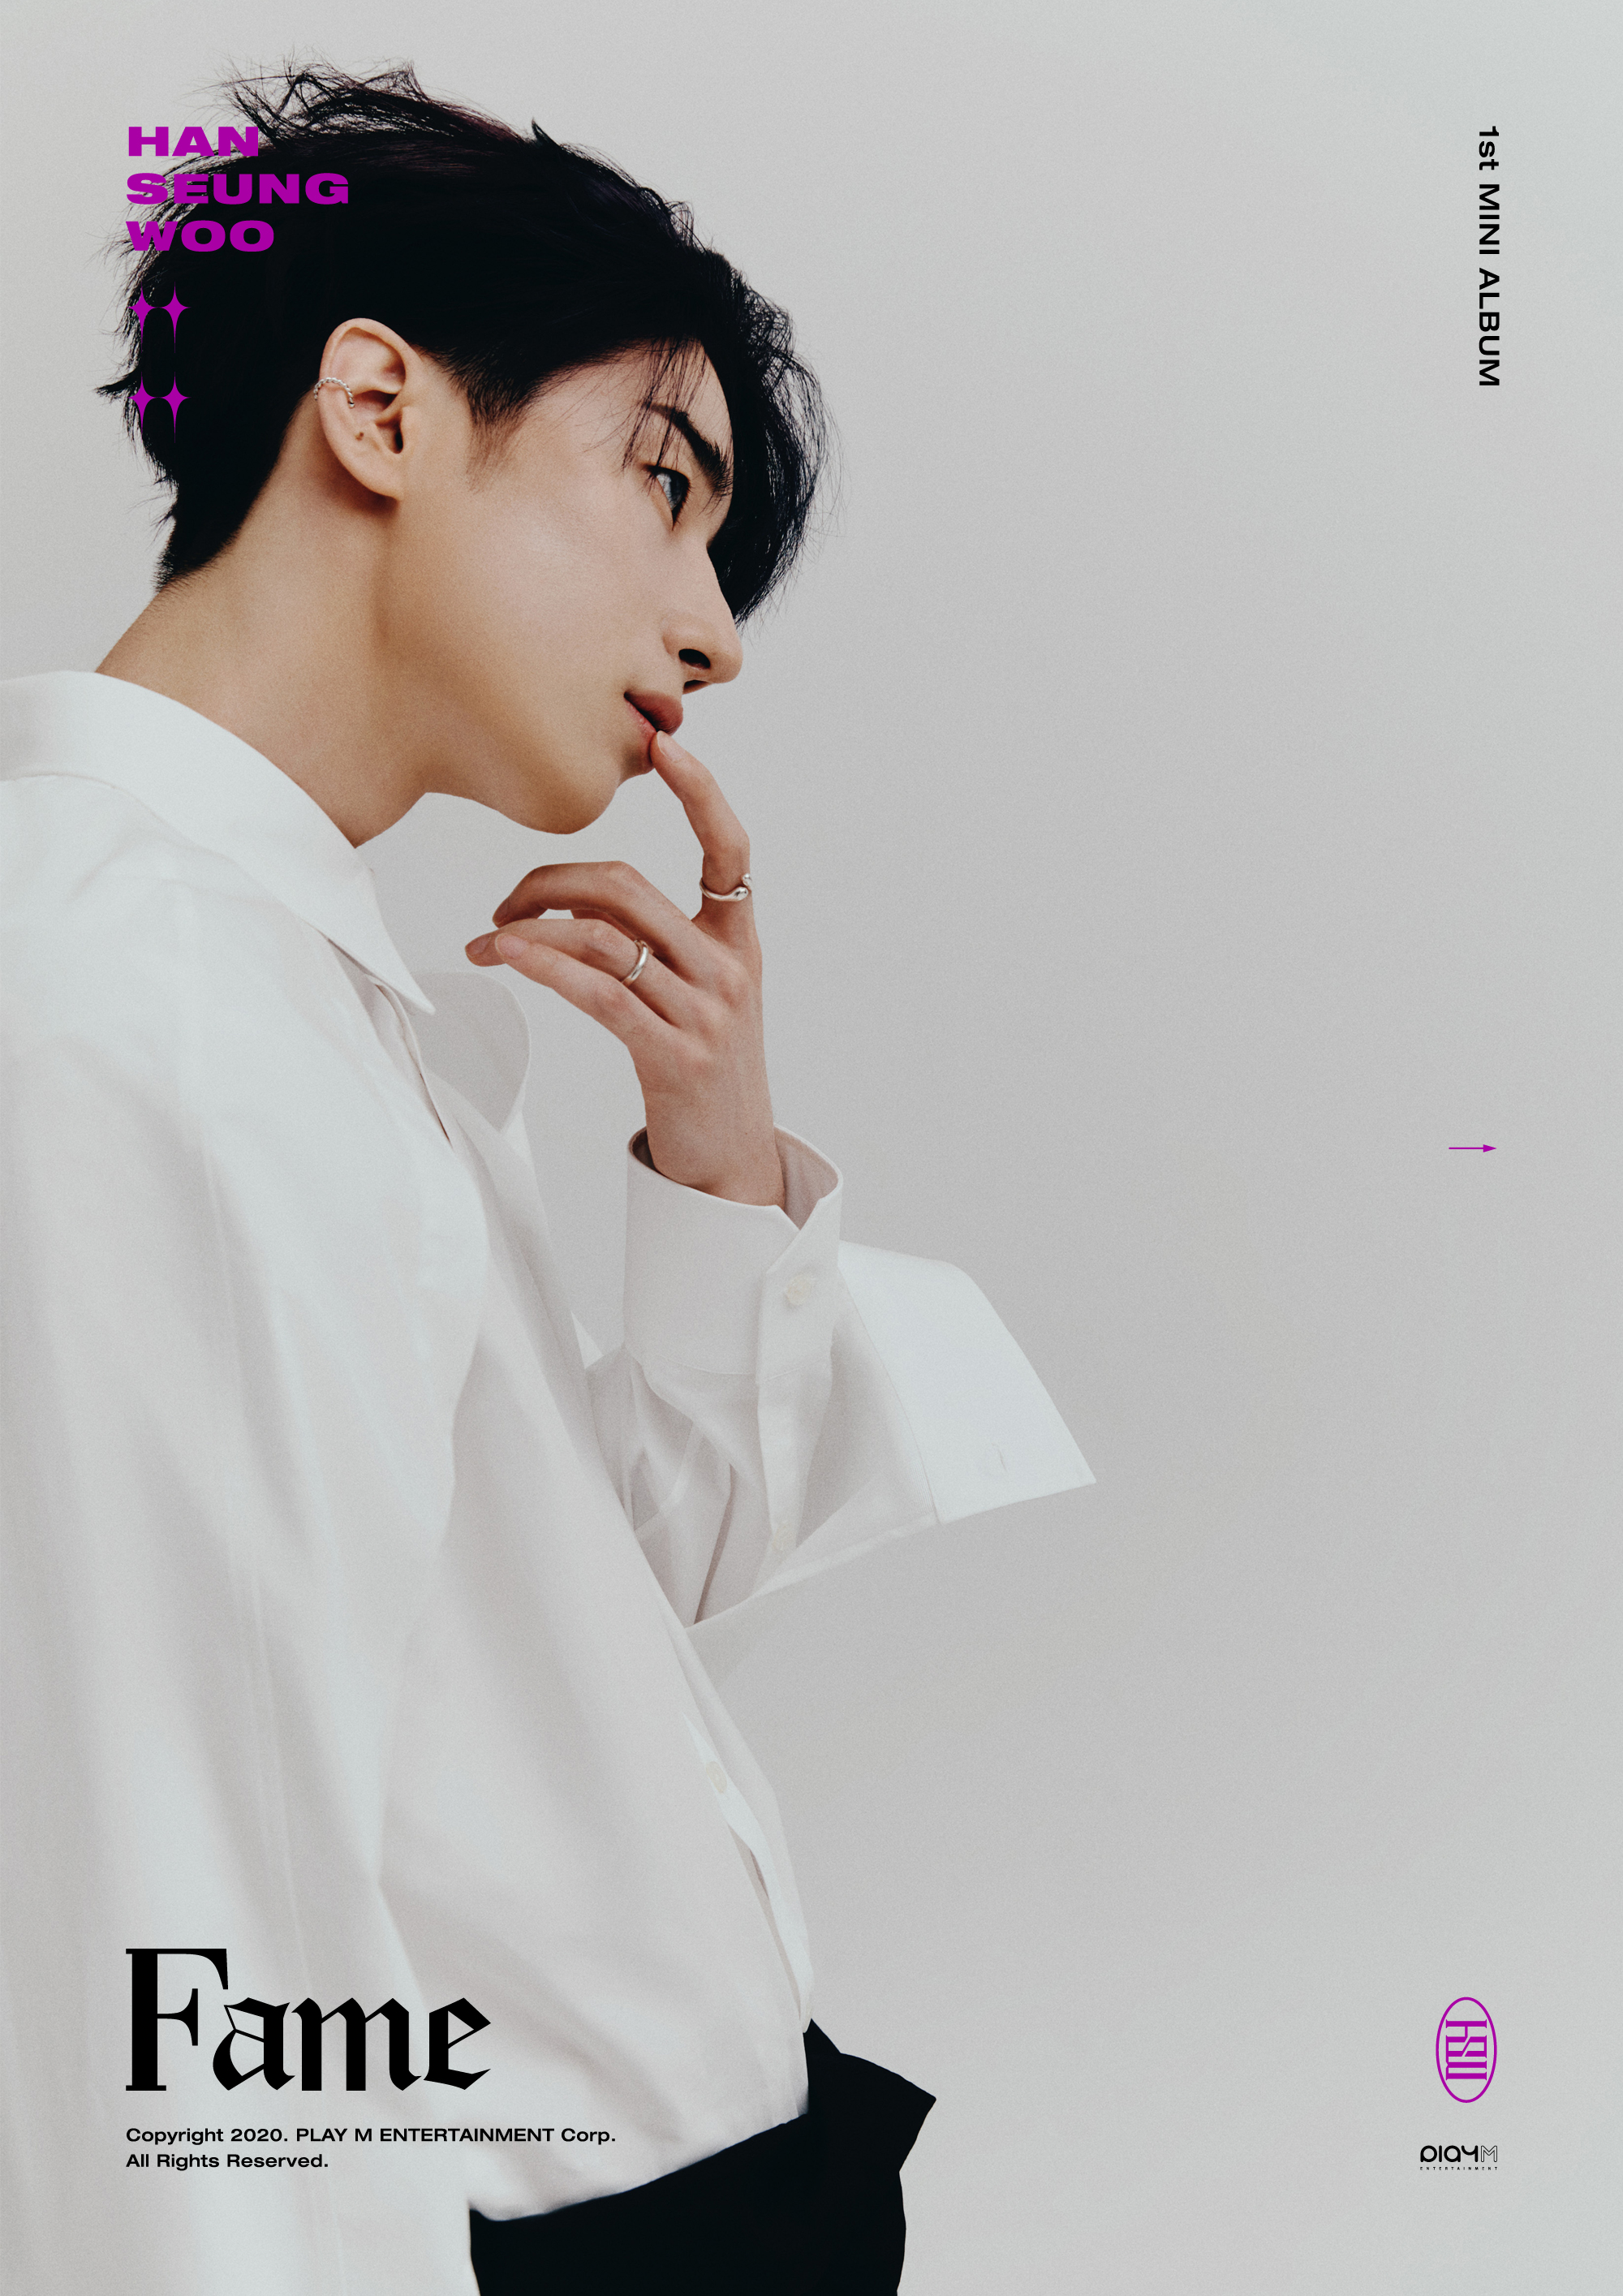 [정보/소식] HAN SEUNG WOO 1st Mini Album [Fame] IMAGE TEASER #SEUNG | 인스티즈